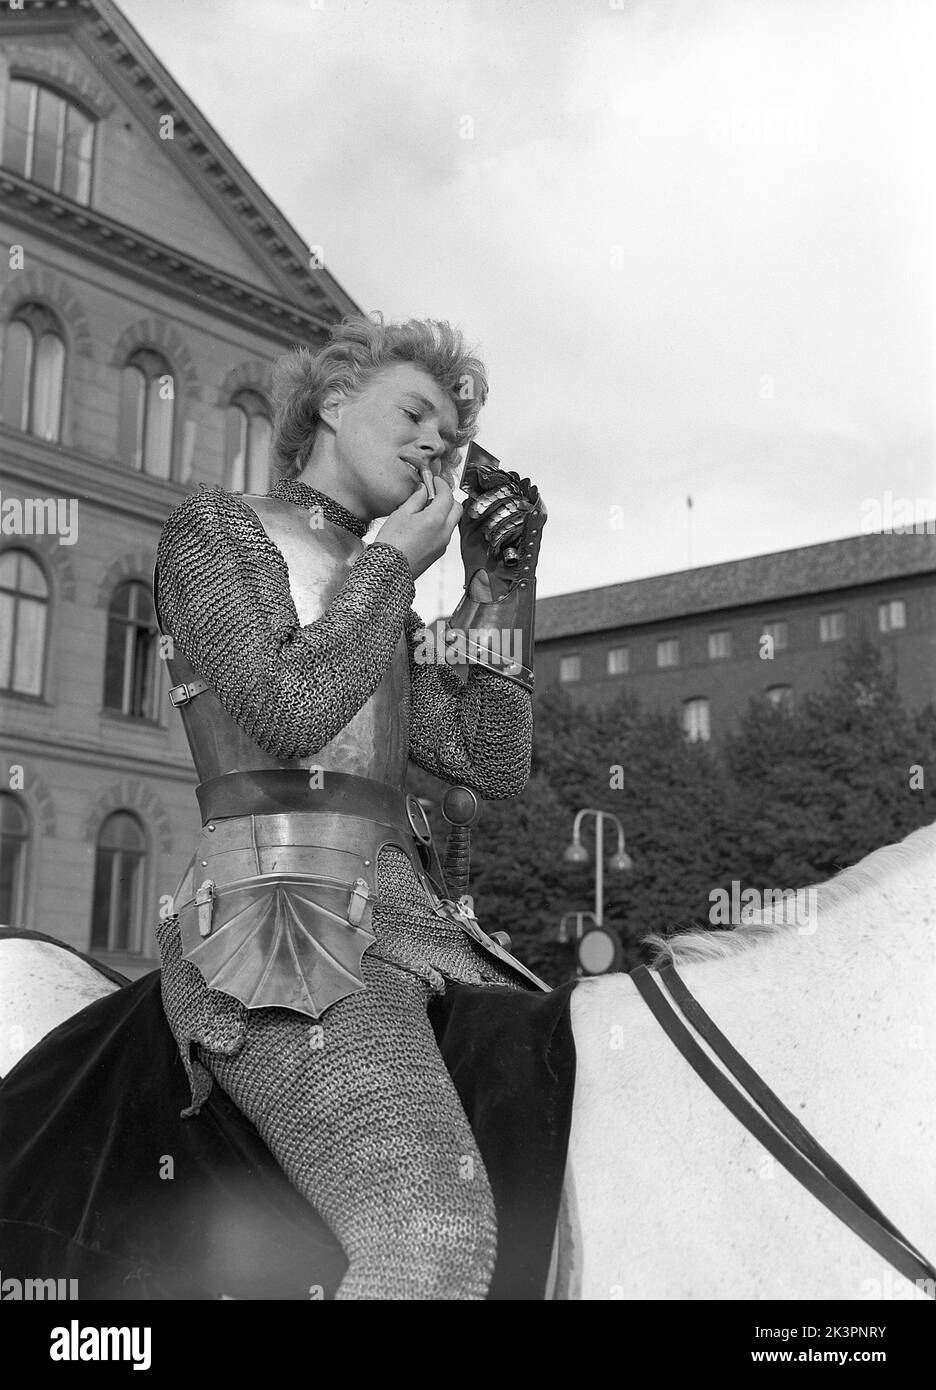 Negli anni '1940s. Il film americano Jeanne d'Arc è stato promosso per la sua prima proiezione e Kerstin Bergo è stato scelto per agire come Ingrid Bergman nel pr-stunt. Sembrava un po' Ingrid Bergman e poteva cavalcare. Riesce a migliorare il suo trucco anche vestito come cavaliere in armatura, tenendo un mirrior tasca nella sua mano coperta di metallo e il rossetto nell'altro. Stoccolma Svezia 1949. Kristoffersson rif AO17-2 Foto Stock